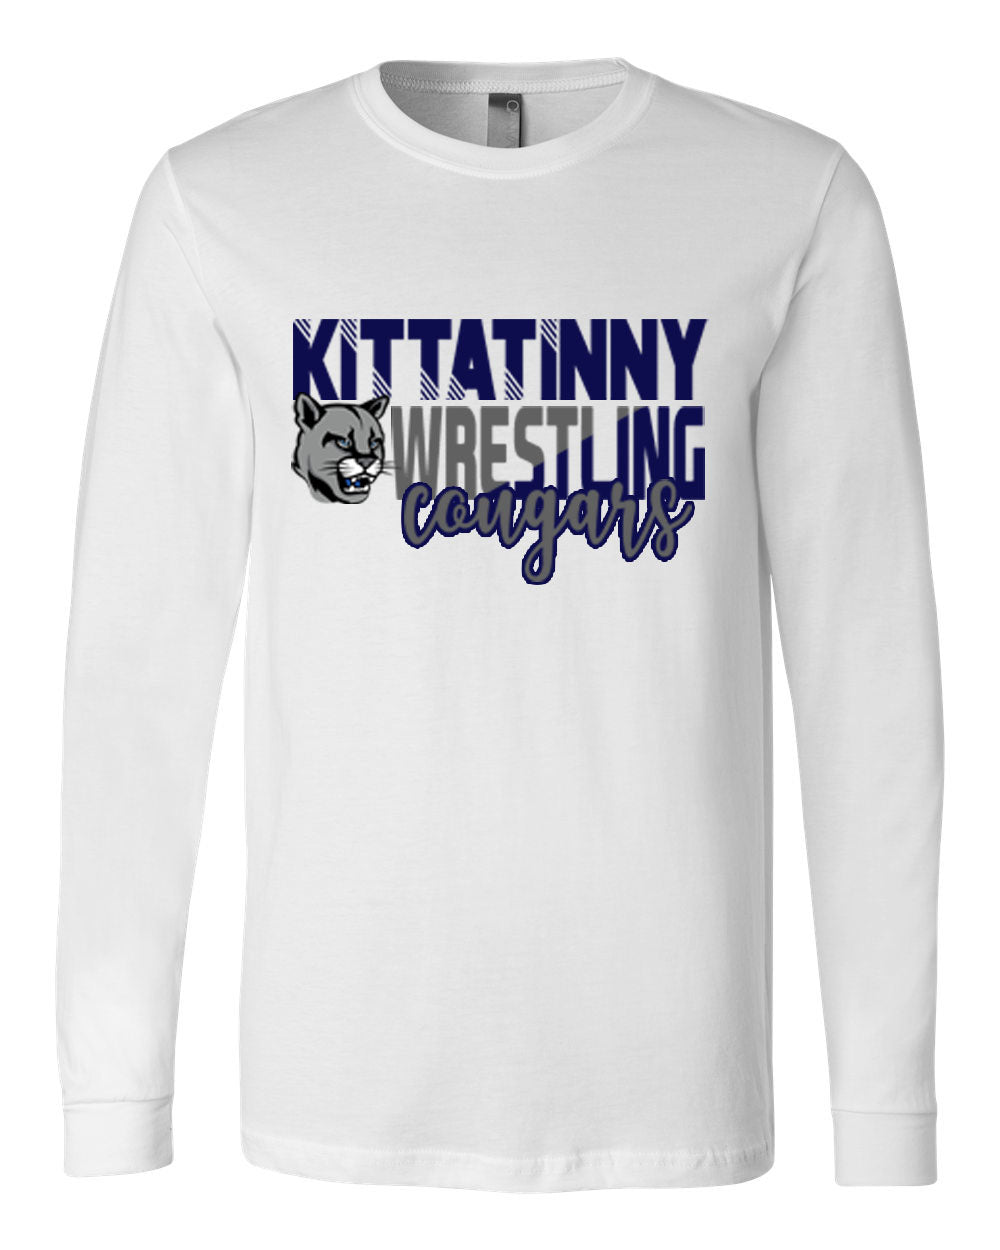 Kittatinny youth wrestling Design 4 Long Sleeve Shirt